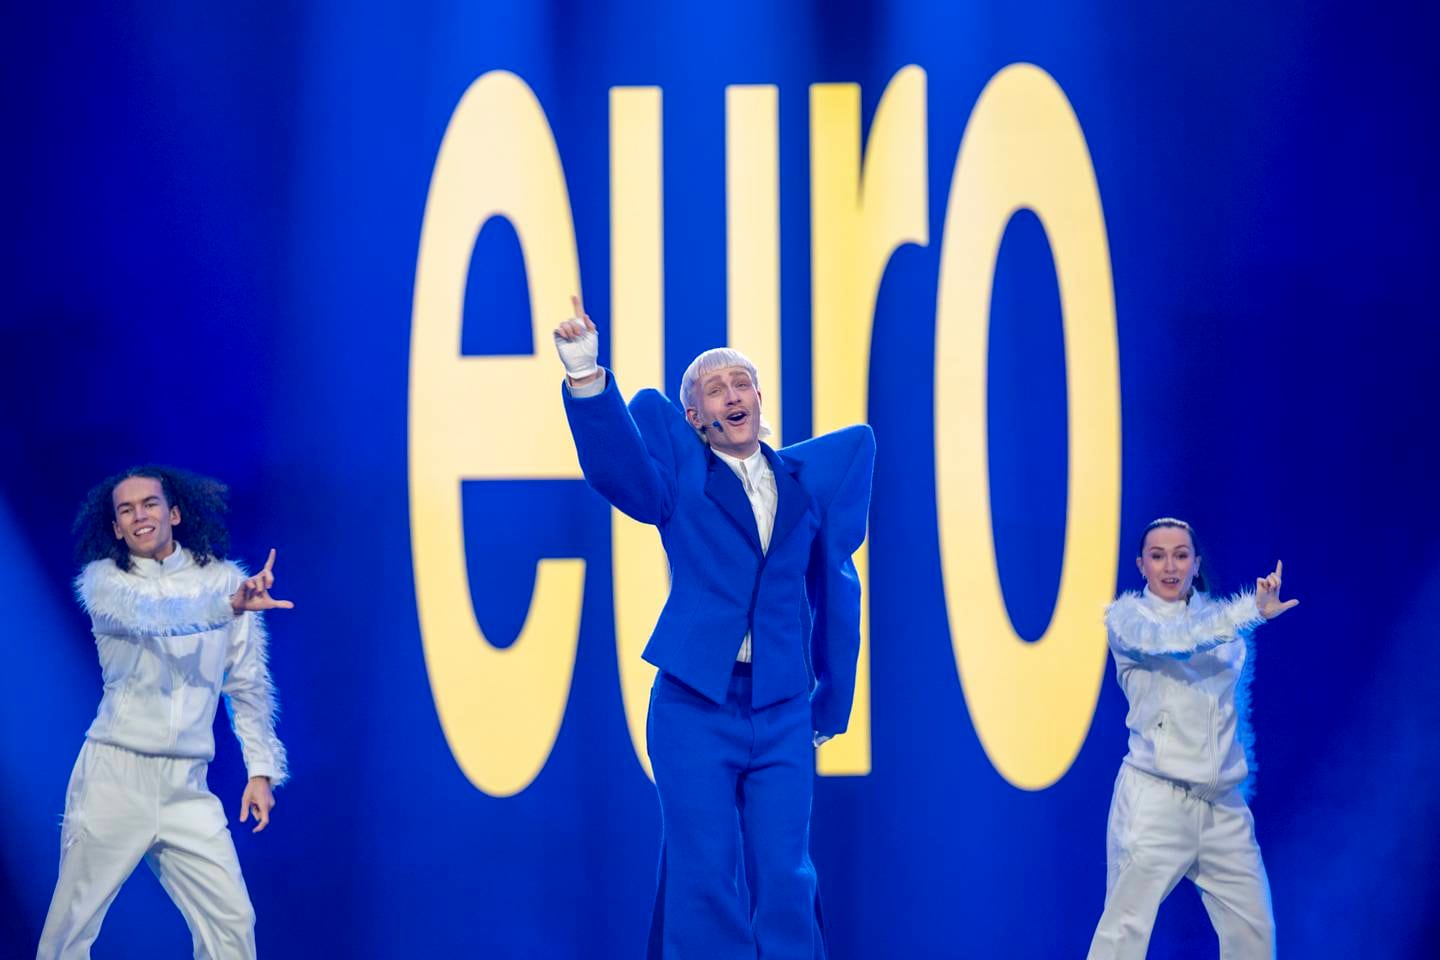 Eurovision.